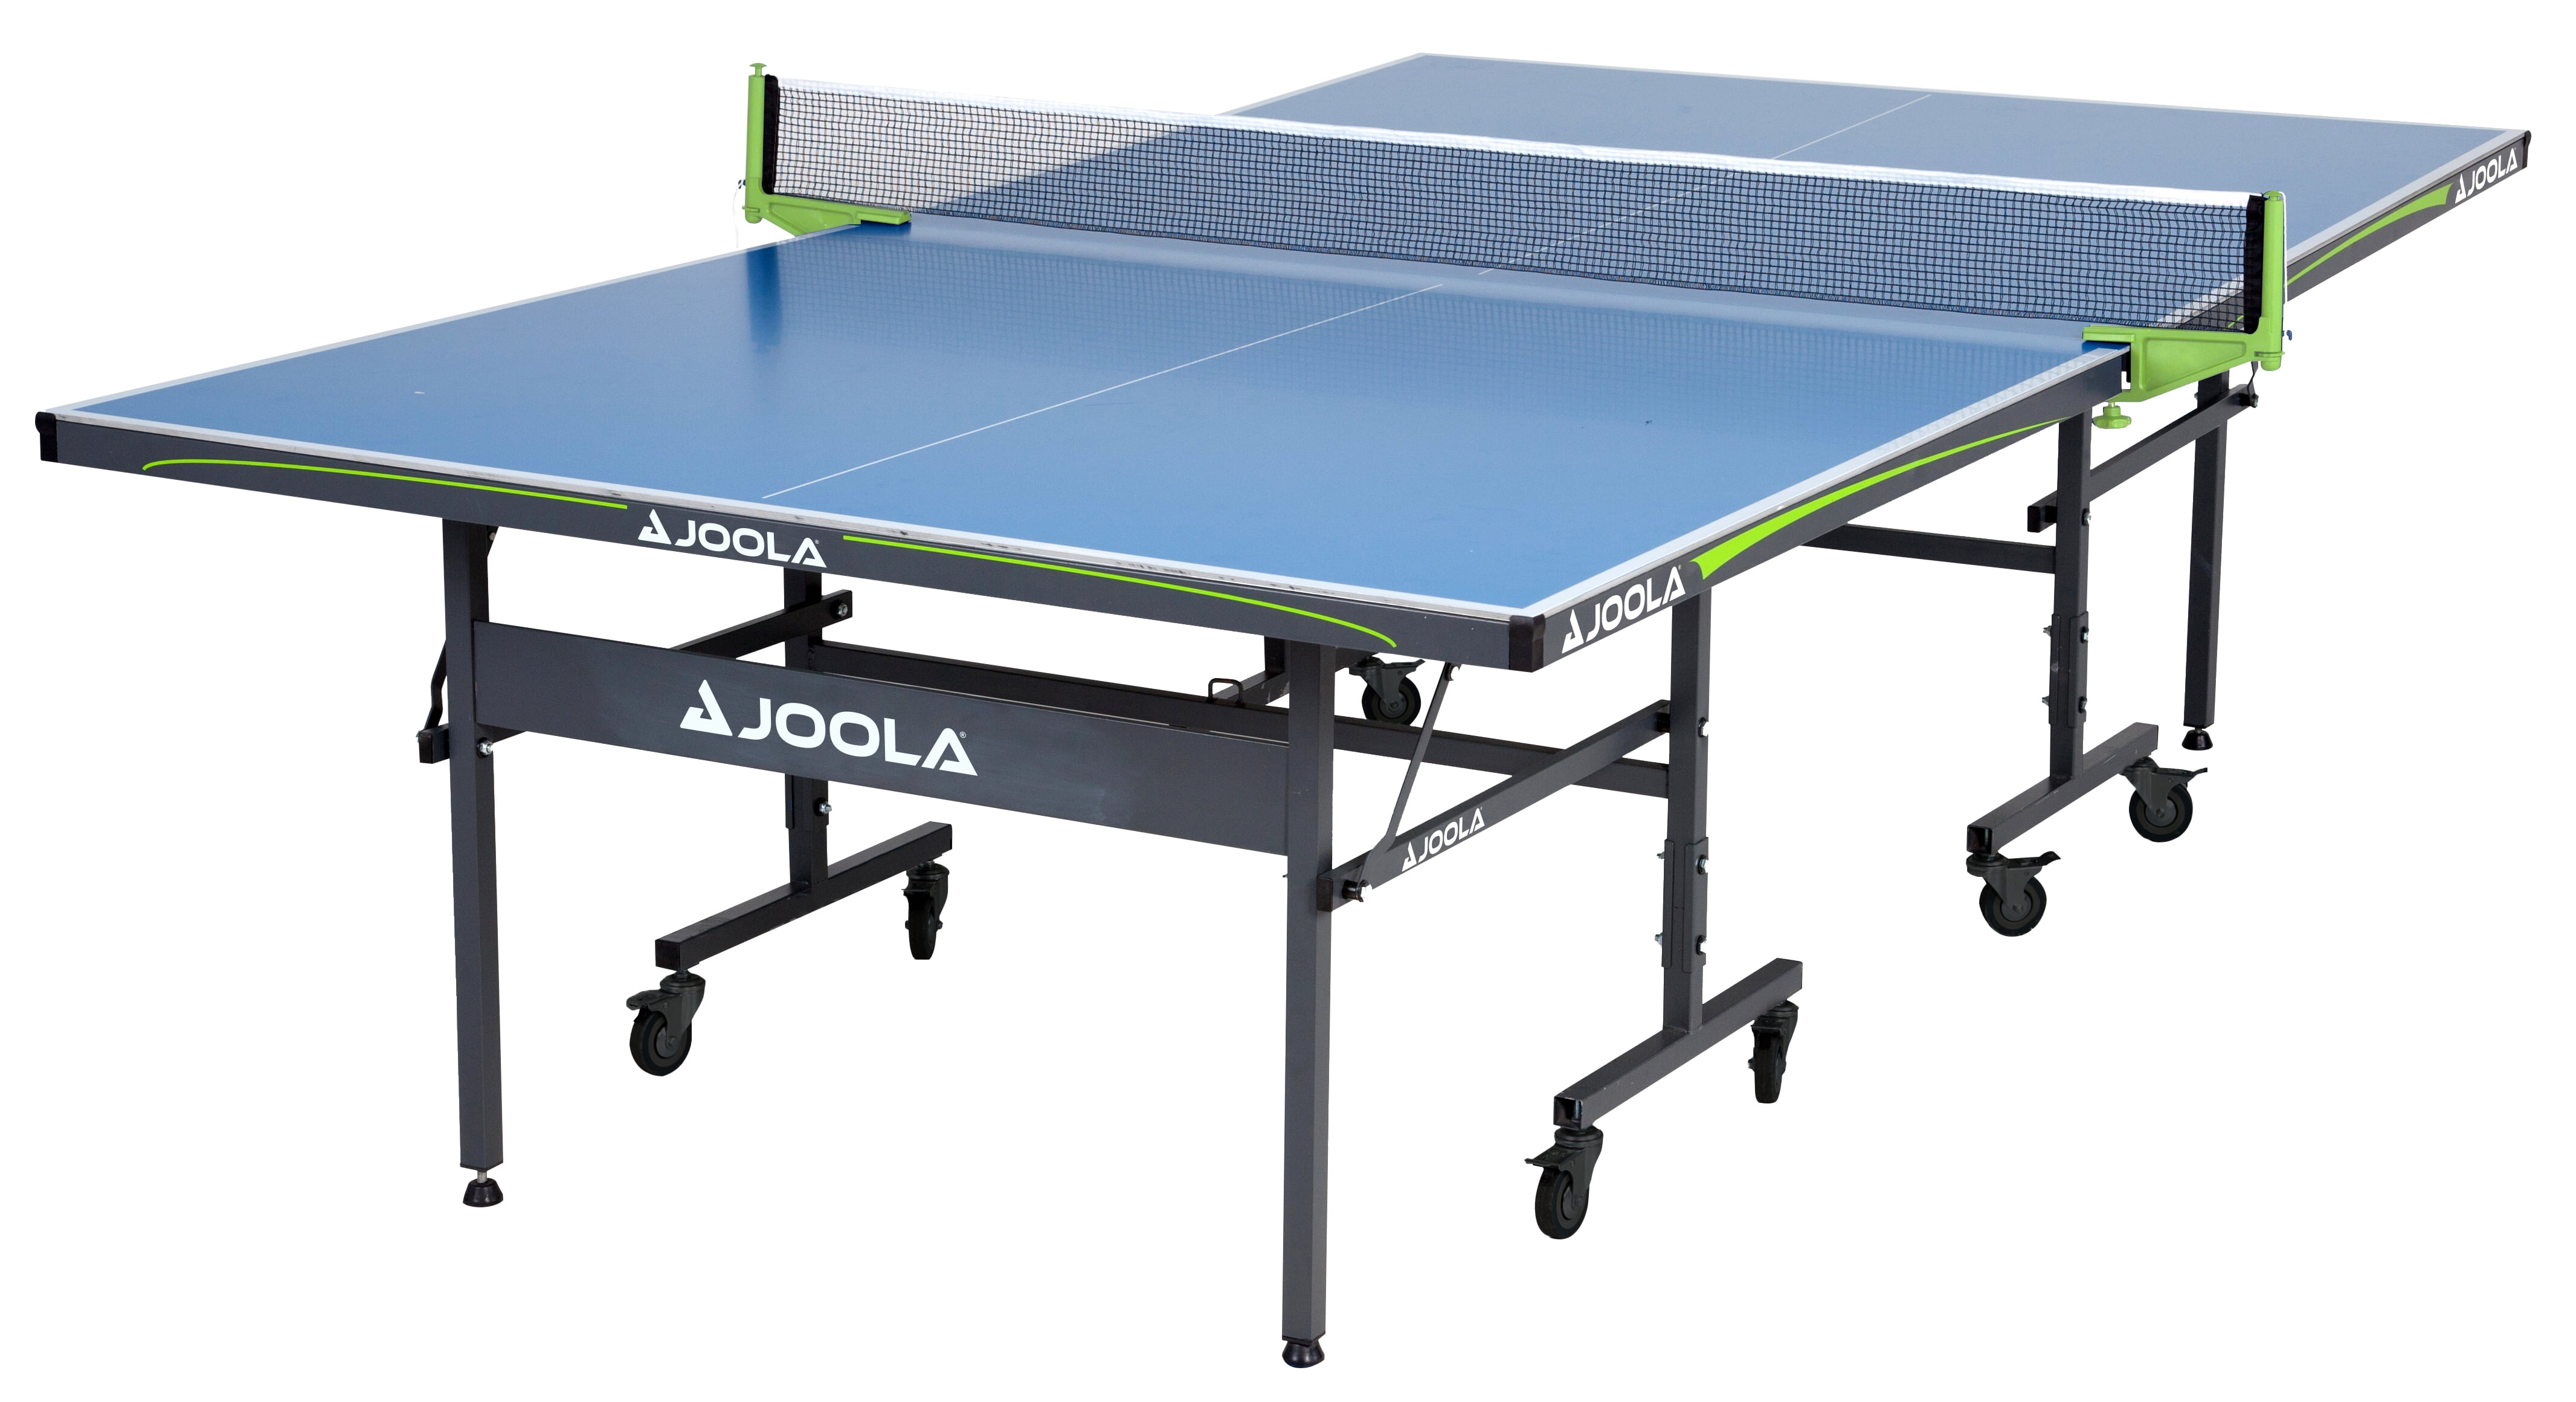 Joola настольный теннис. Теннисный стол Joola. Теннисный стол Kettler Indoor 10. Стол для тенниса Joola. Stol Tennis” “Ping-Pong”.